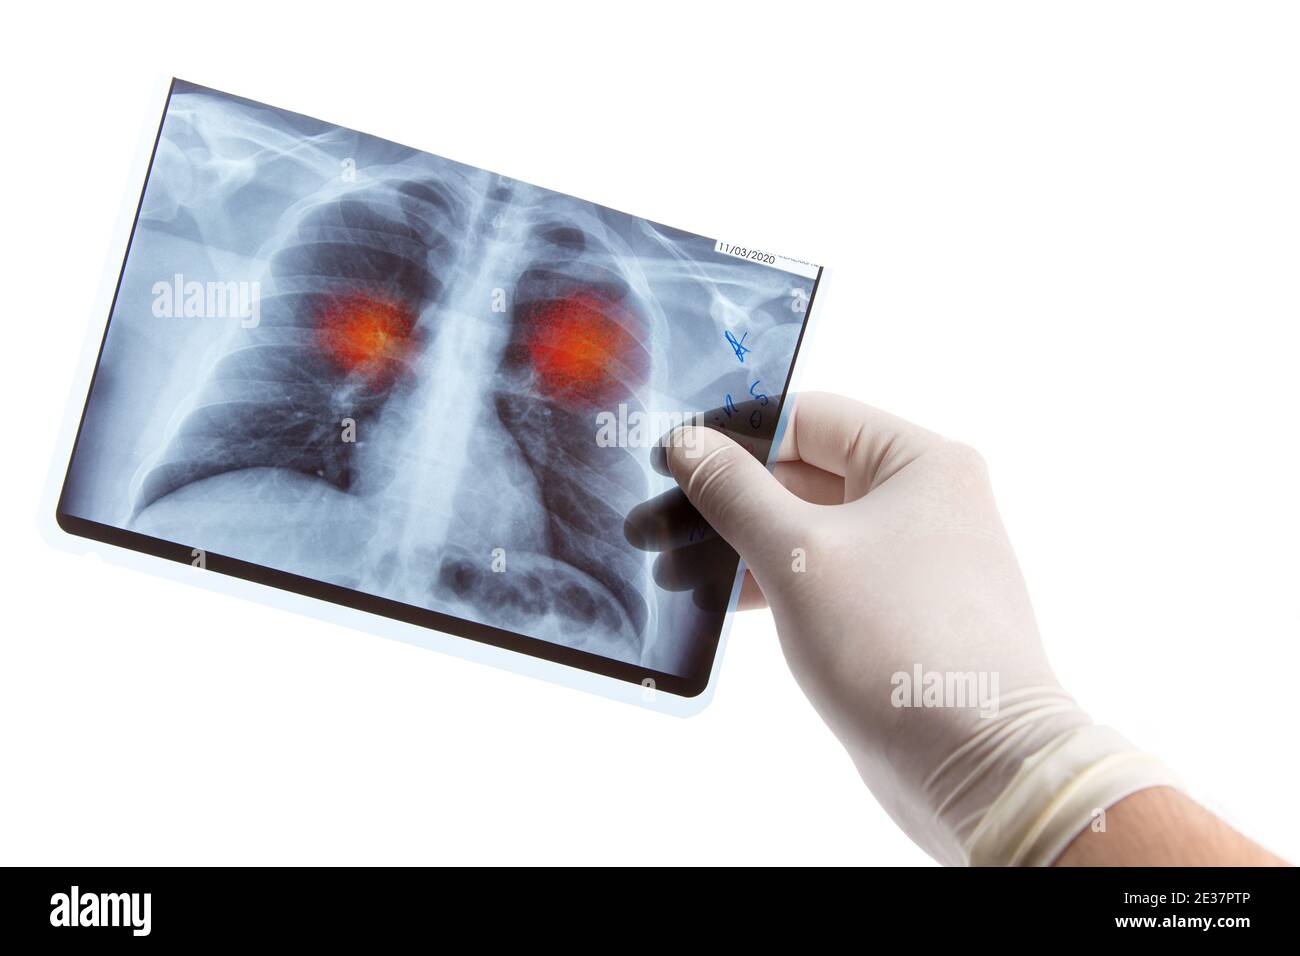 Médecin en gant médical tenant une radiographie pulmonaire avec des signes d'infection, isolé sur fond blanc Banque D'Images